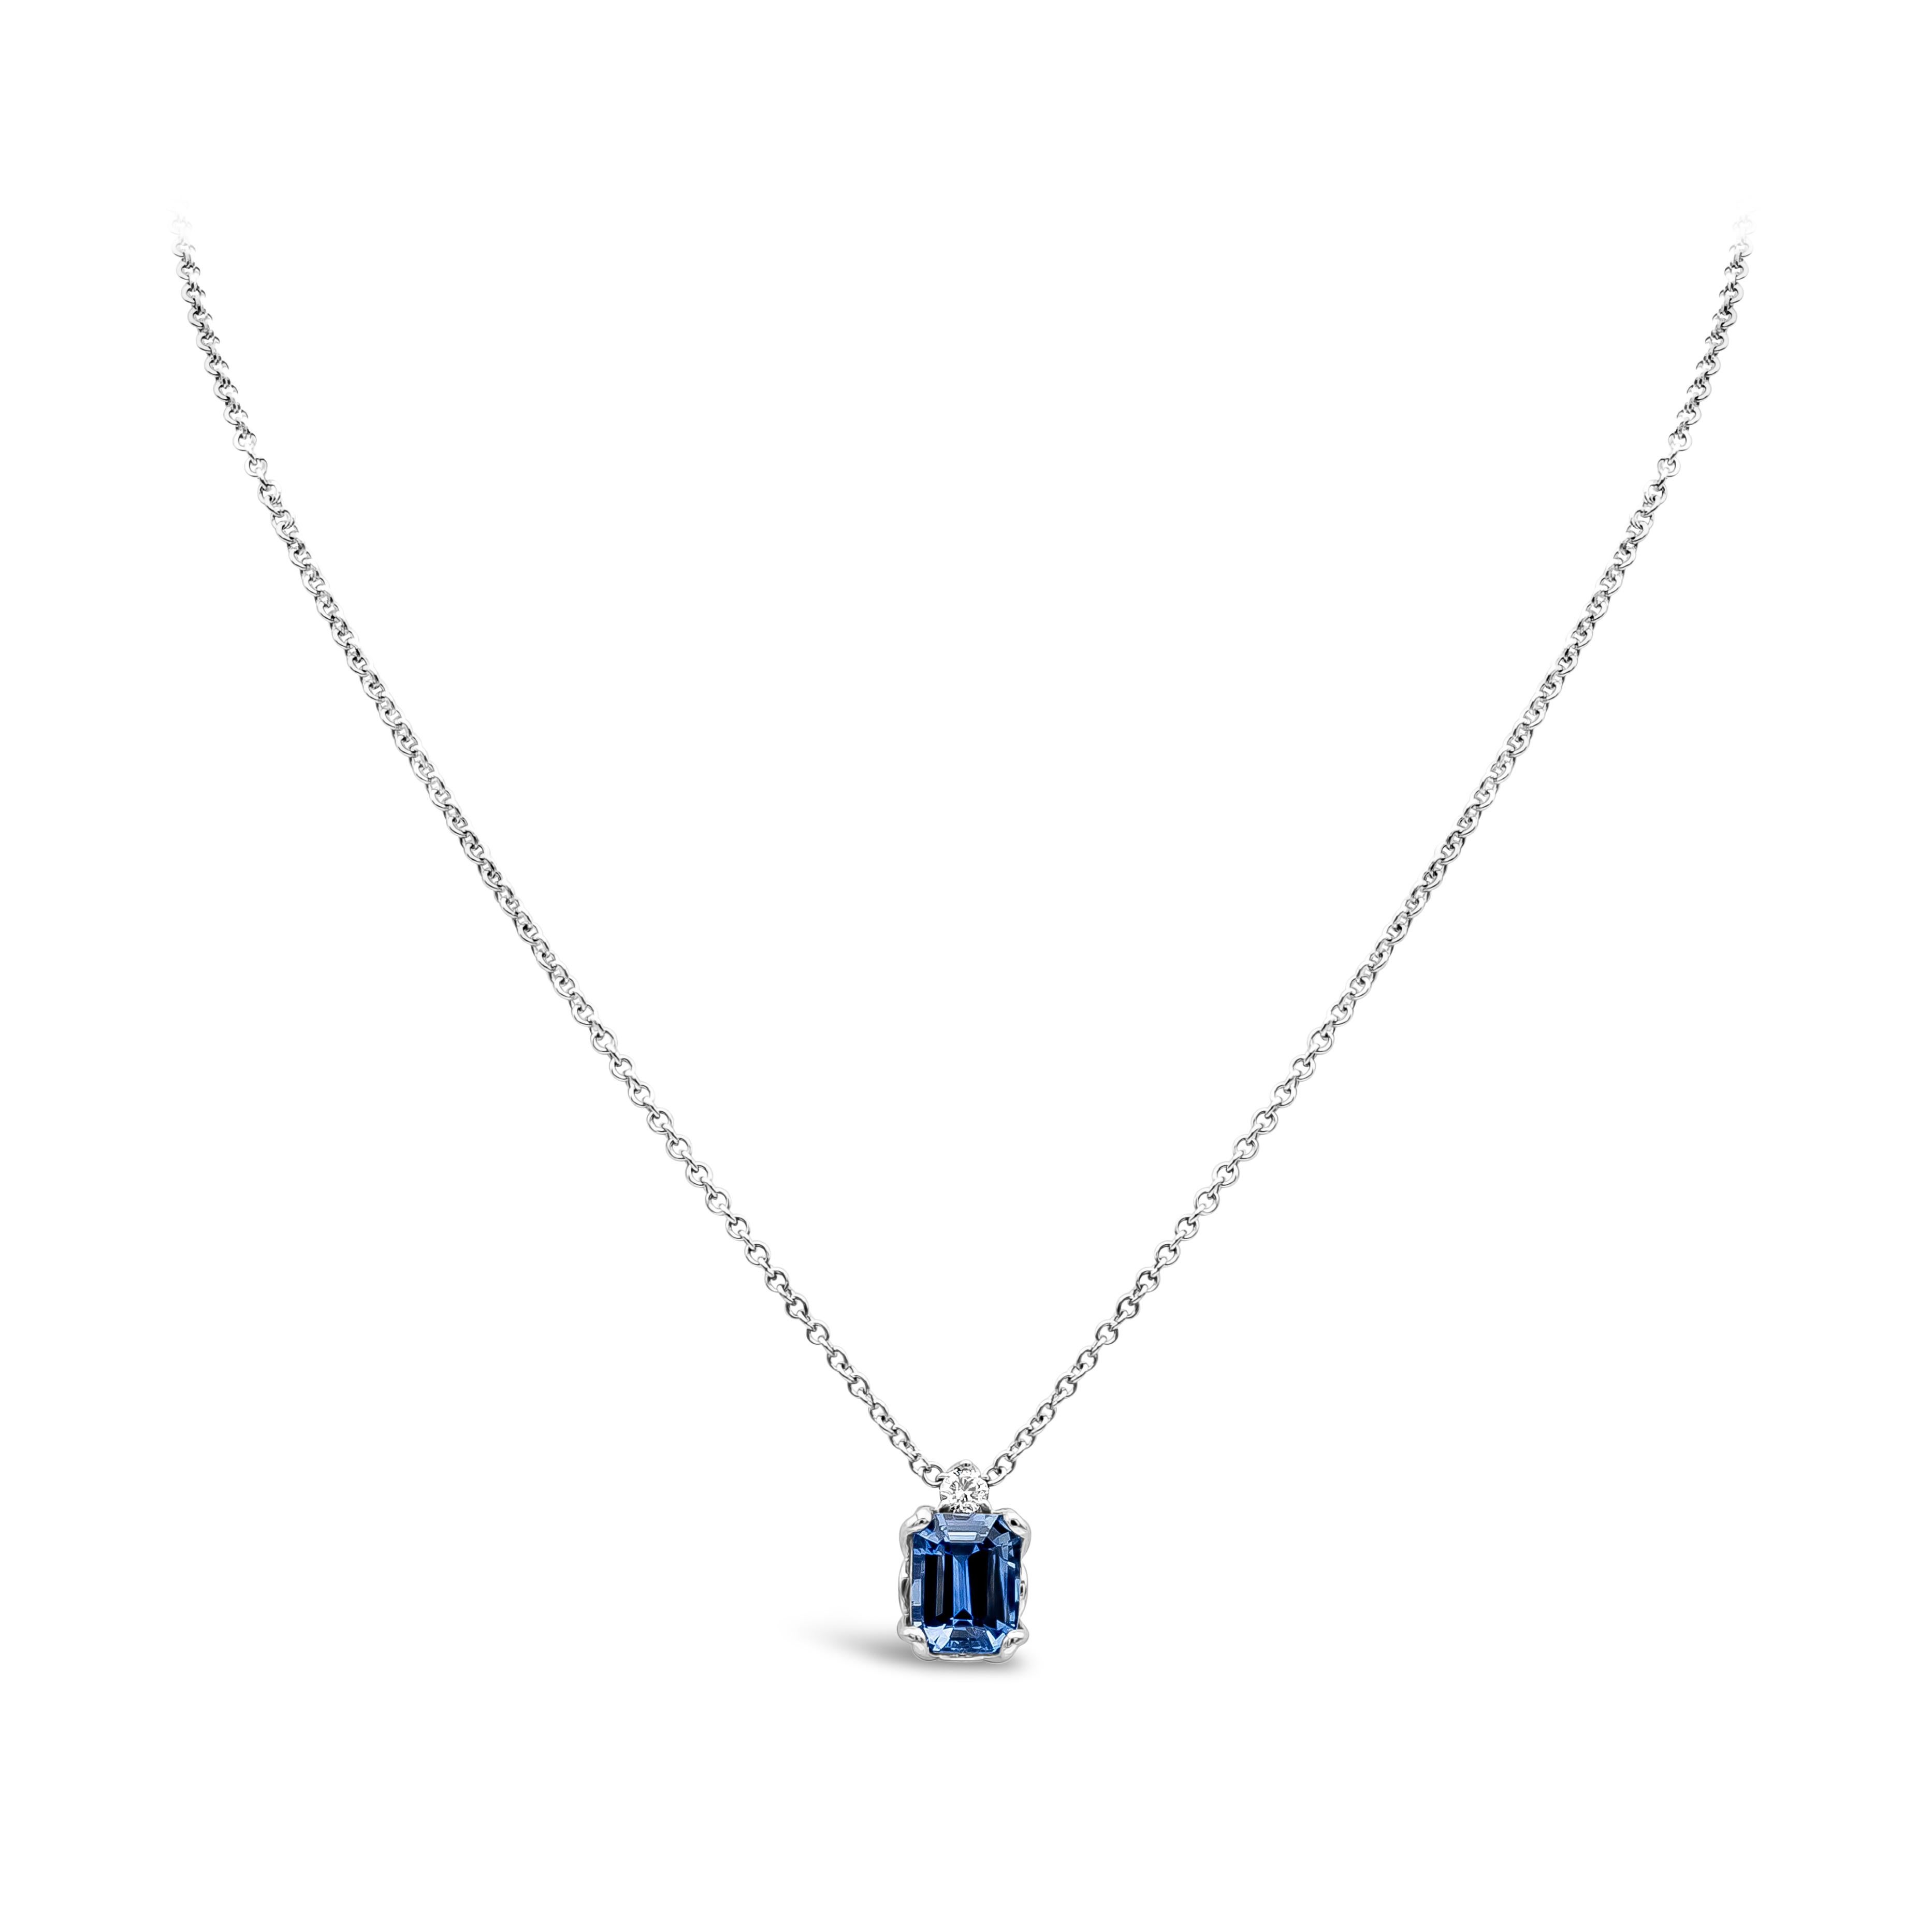 Ce superbe collier pendentif présente un saphir bleu émeraude certifié GIA de 2,77 carats, avec 1 diamant rond de taille brillant pesant 0,09 carats au total, couleur F, pureté VS, et serti dans de l'or blanc 18 carats. Longueur de 18 pouces.